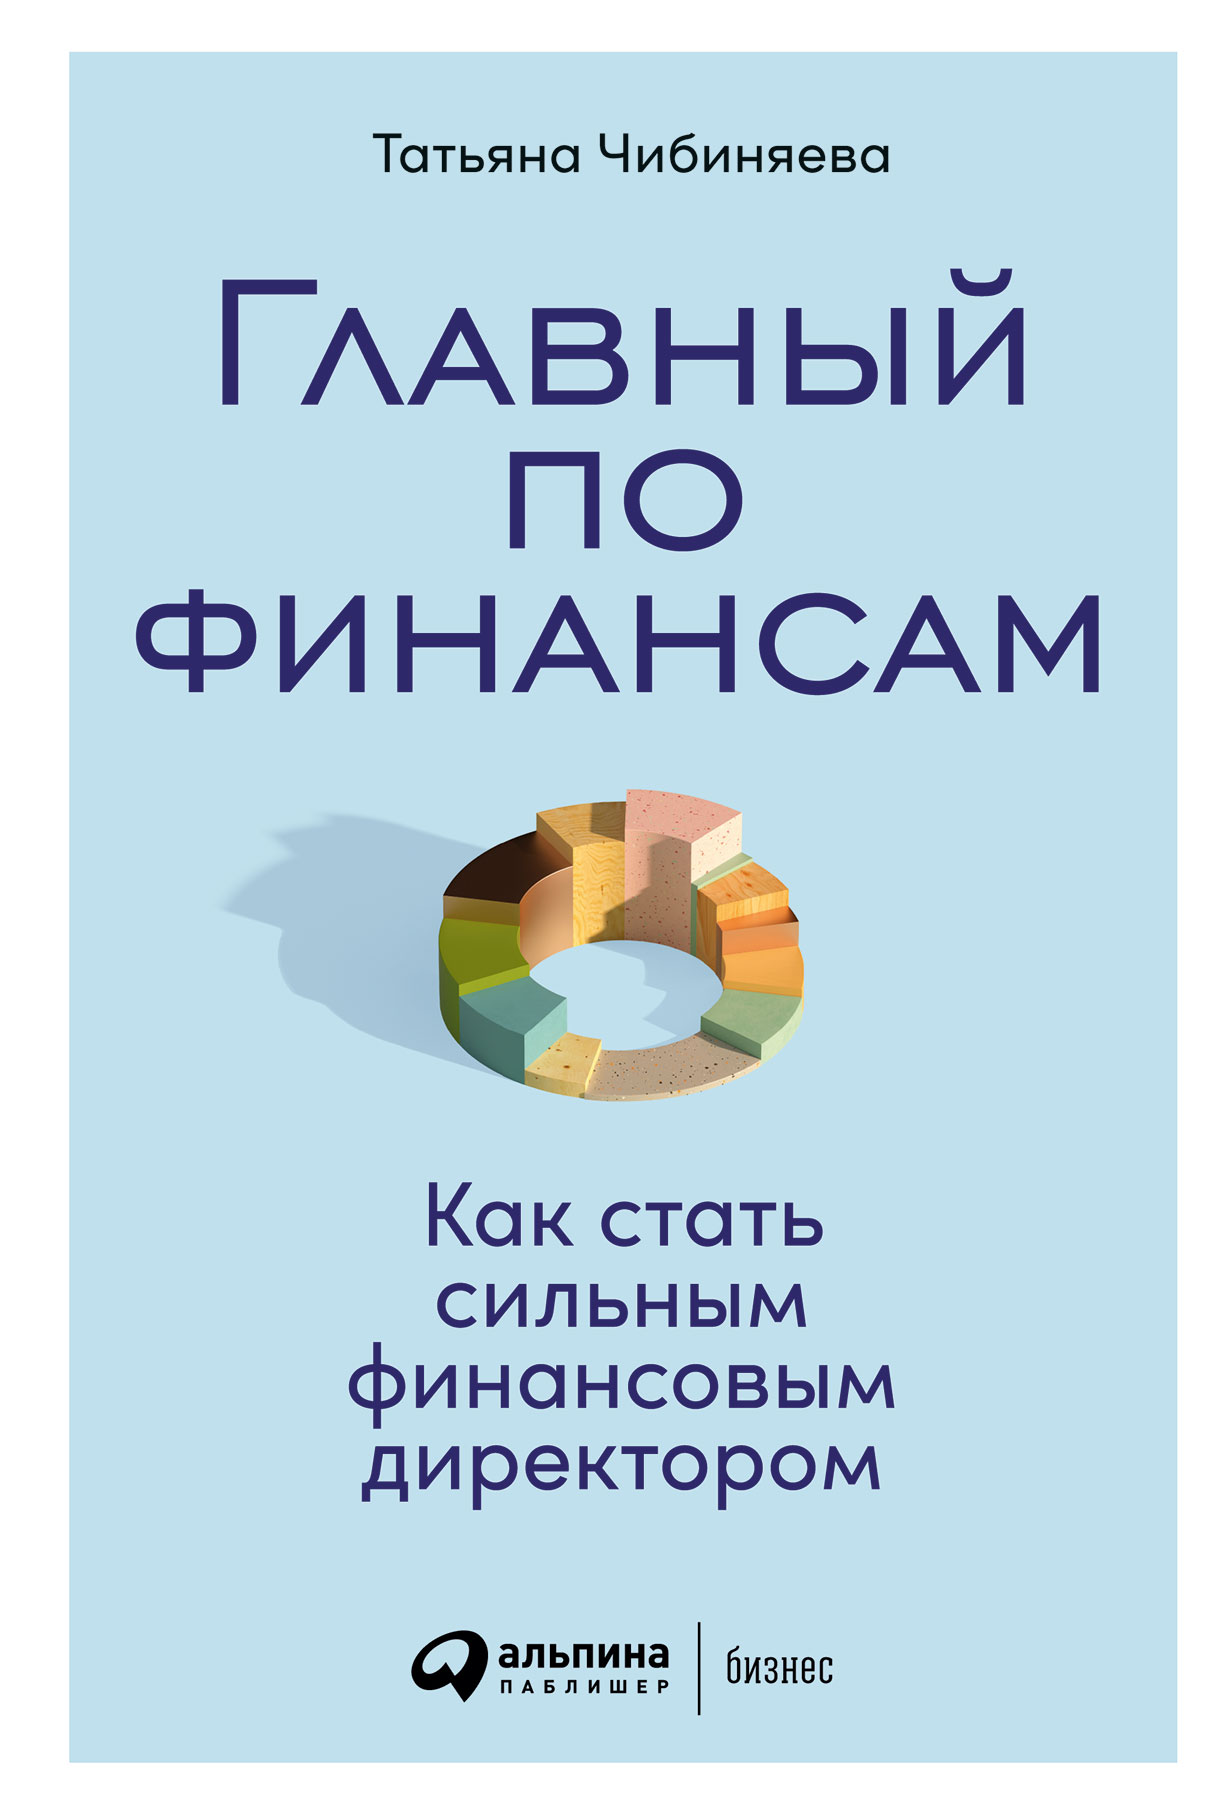 Главный по финансам: Как стать сильным финансовым директором — купить книгу  Татьяны Чибиняевой на сайте alpinabook.ru